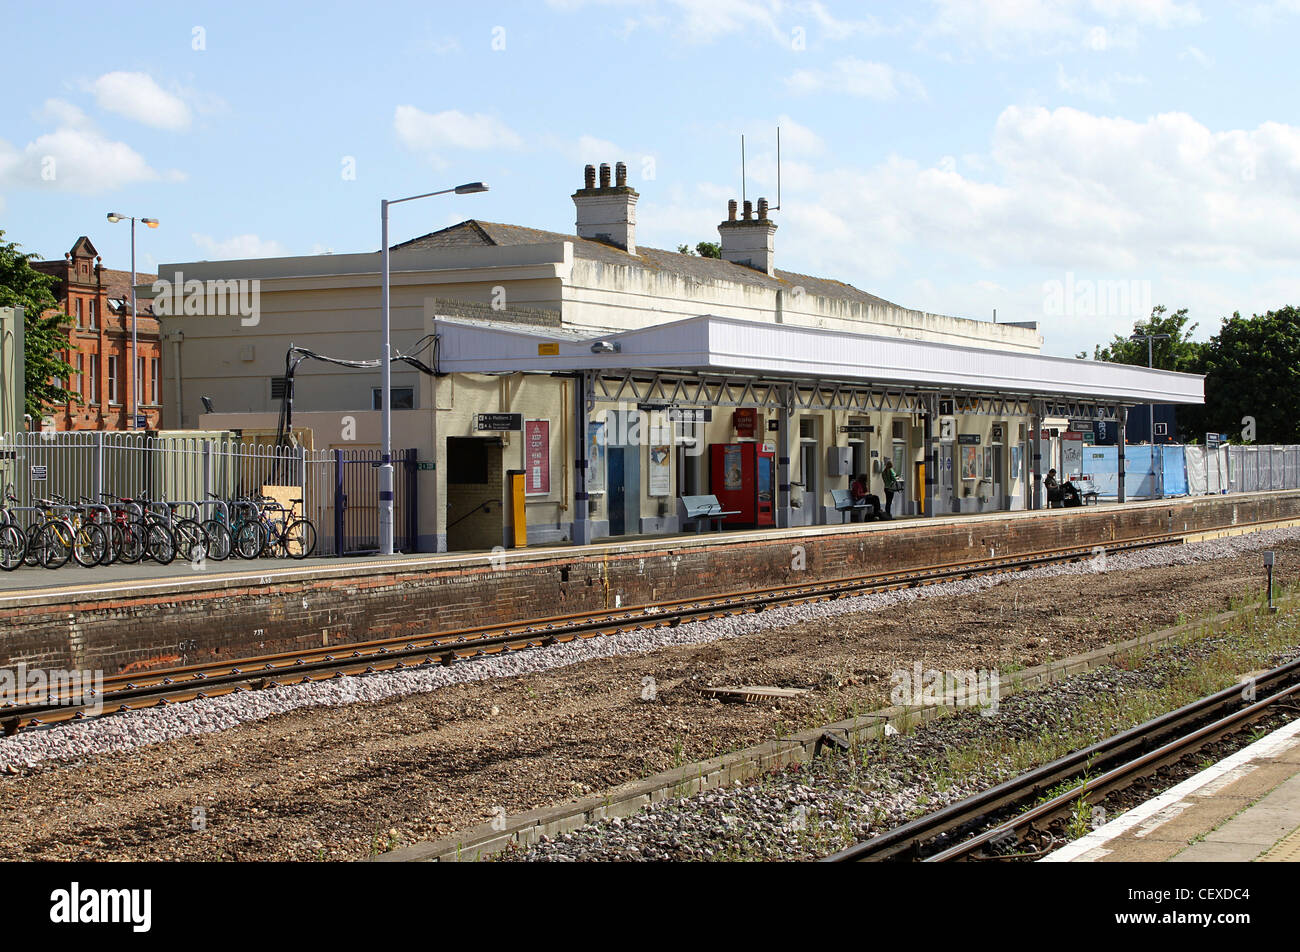 La gare de Canterbury West London UK Plate-forme liée Banque D'Images